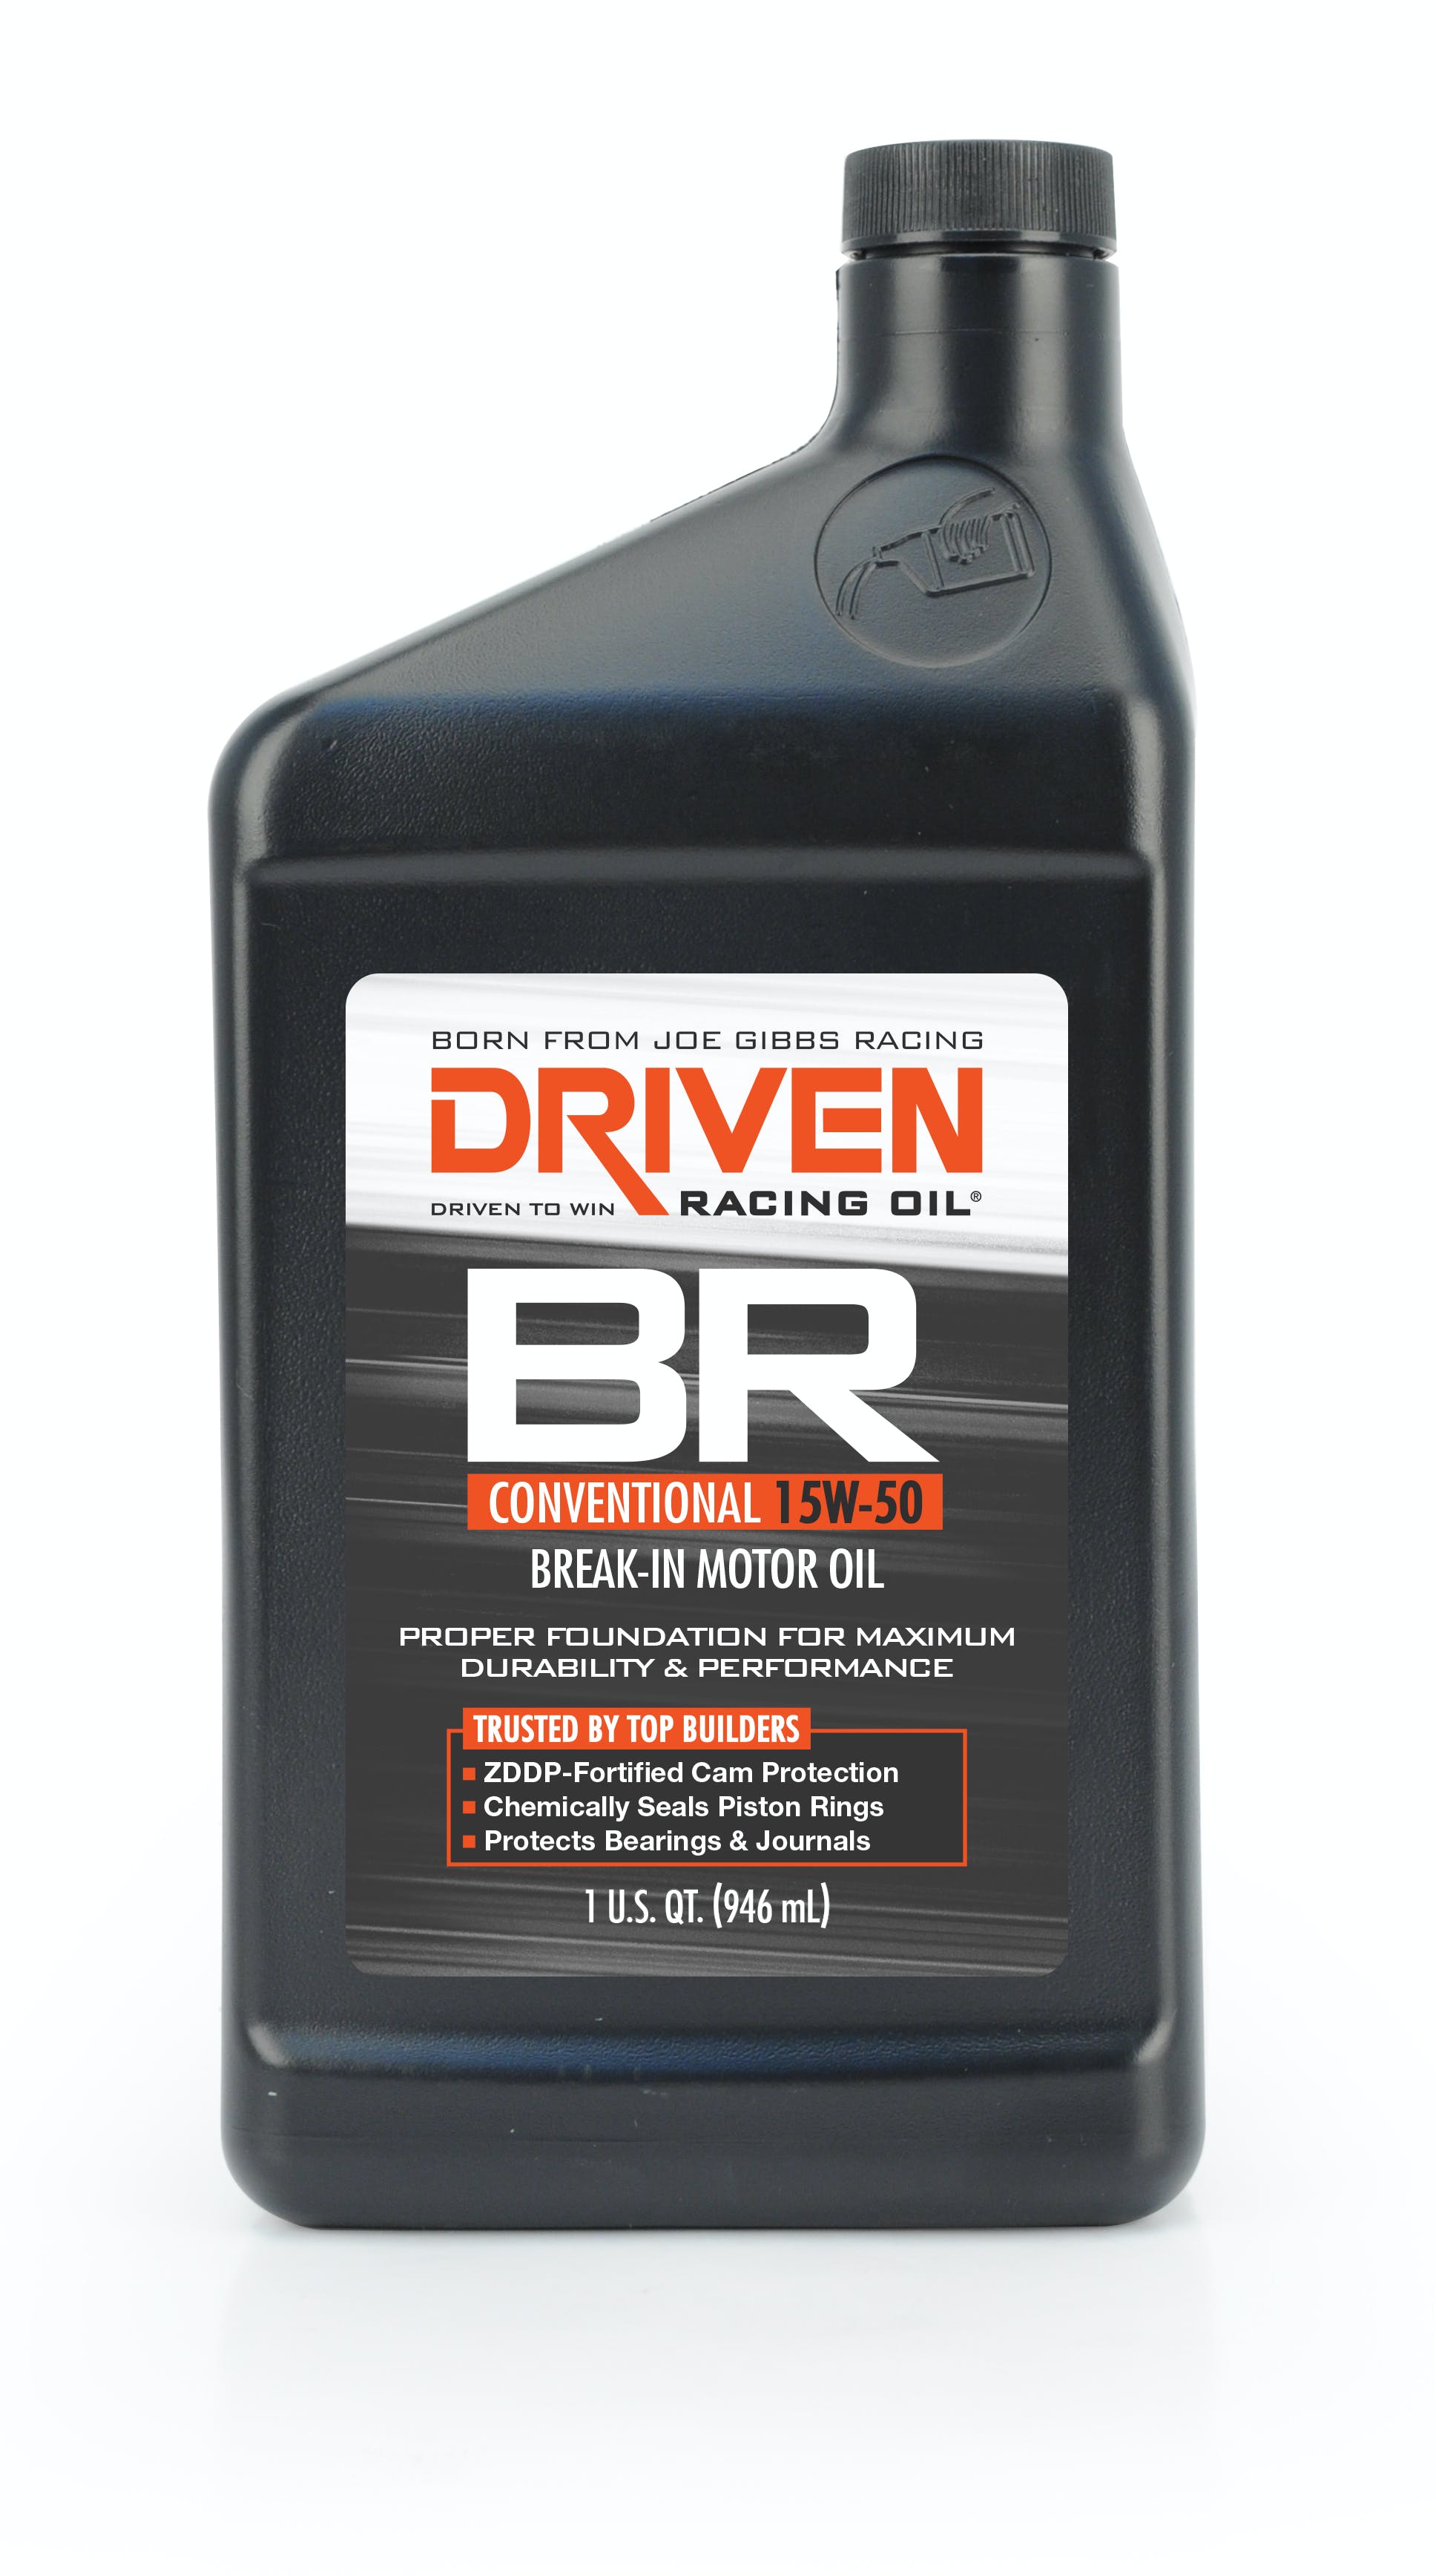 Driven Racing Oil 00106 Conventional 15W-50 Break-In Motor Oil (1 qt. bottle)